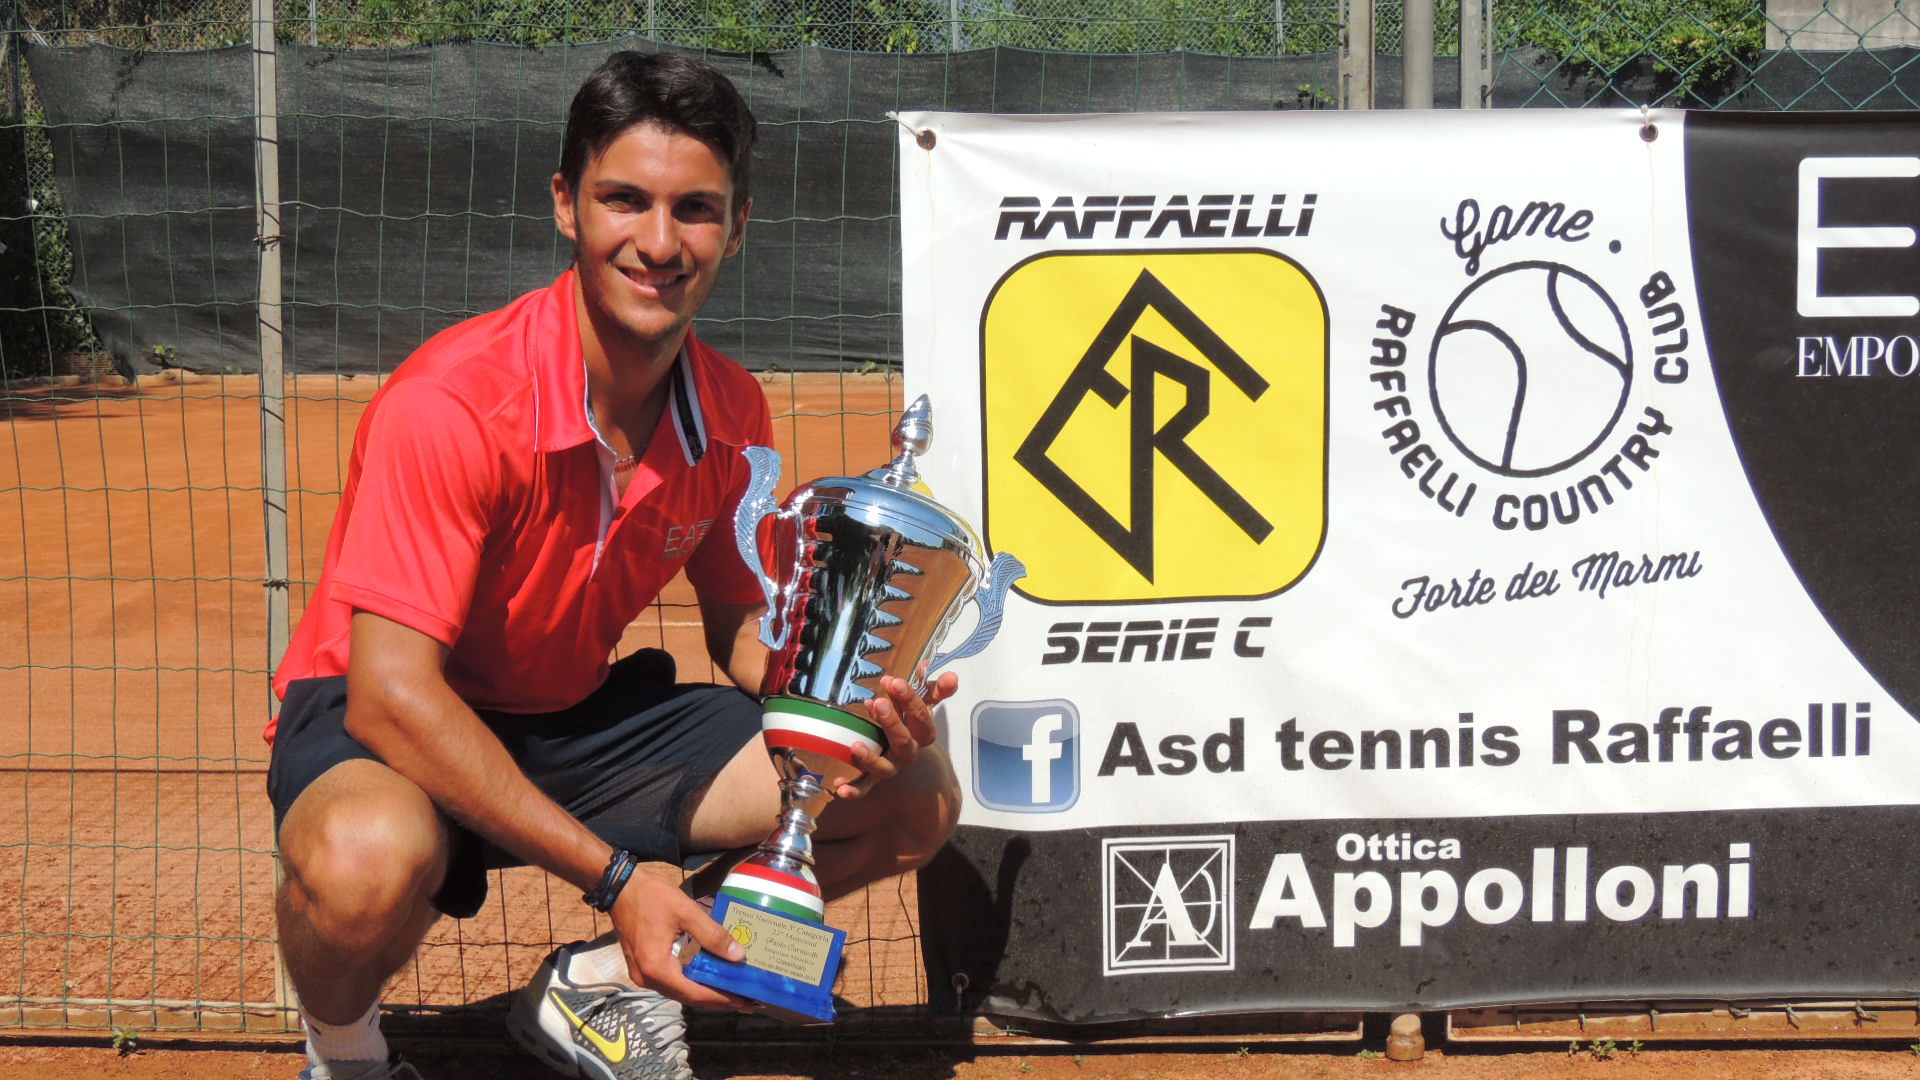 Federico Rocchi vince il memorial “Carnicelli” al Tennis Raffaelli